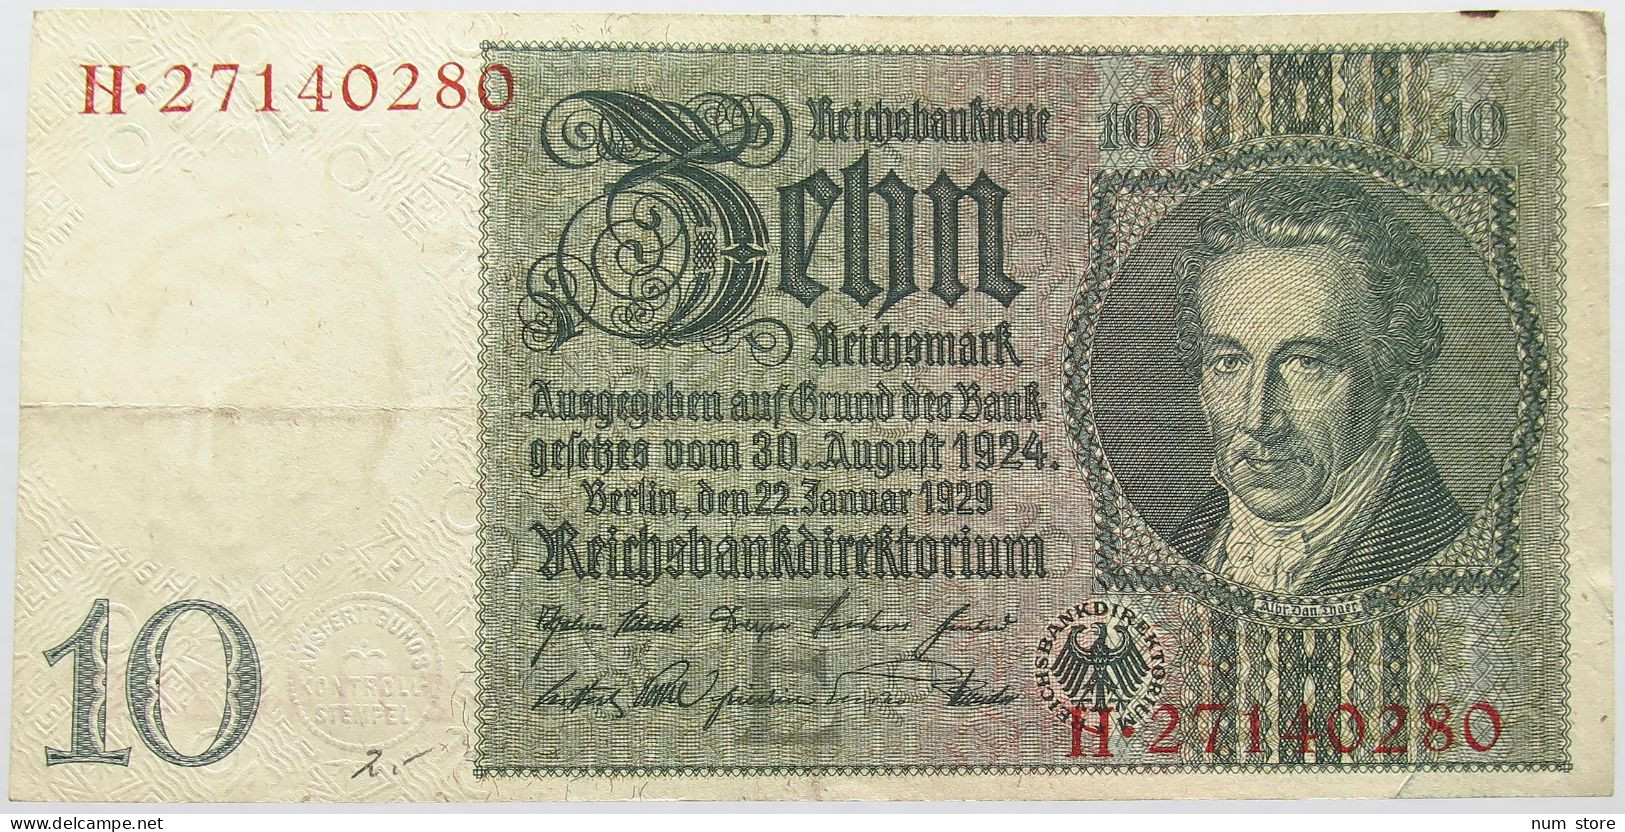 GERMANY 10 MARK 1929 #alb015 0243 - 10 Mark